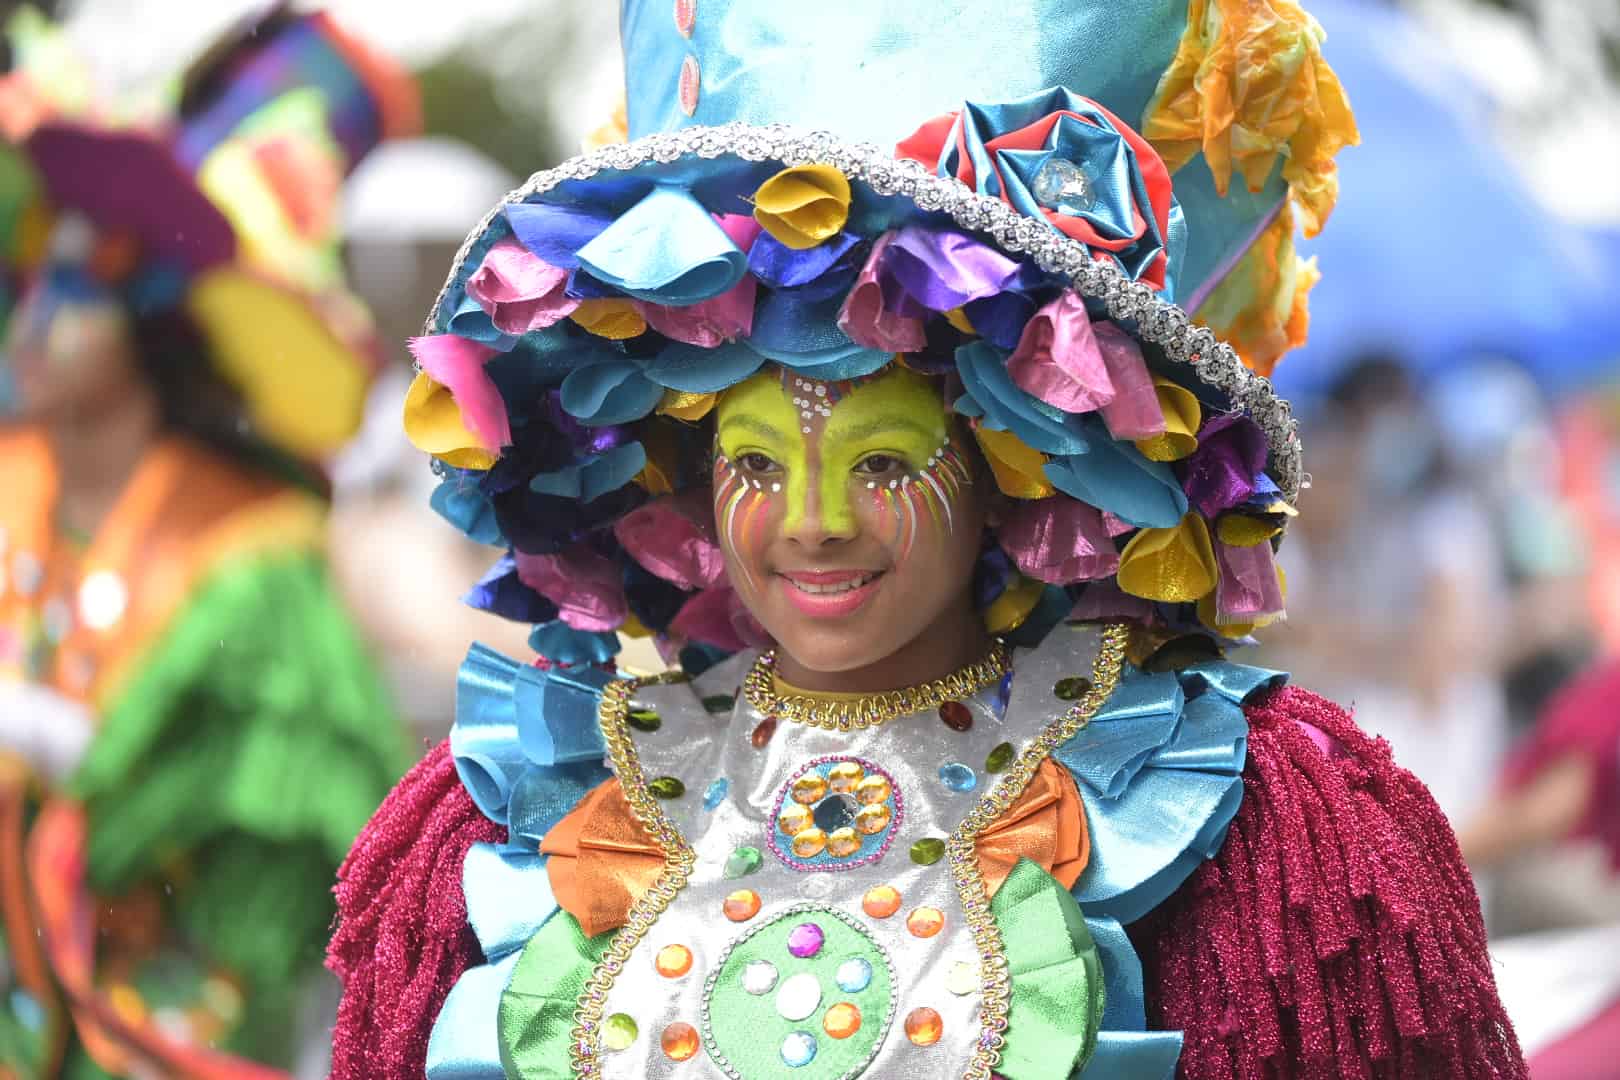 El color y la belleza de la mujer dominicana hizo presencia en el desfile de Carnaval.